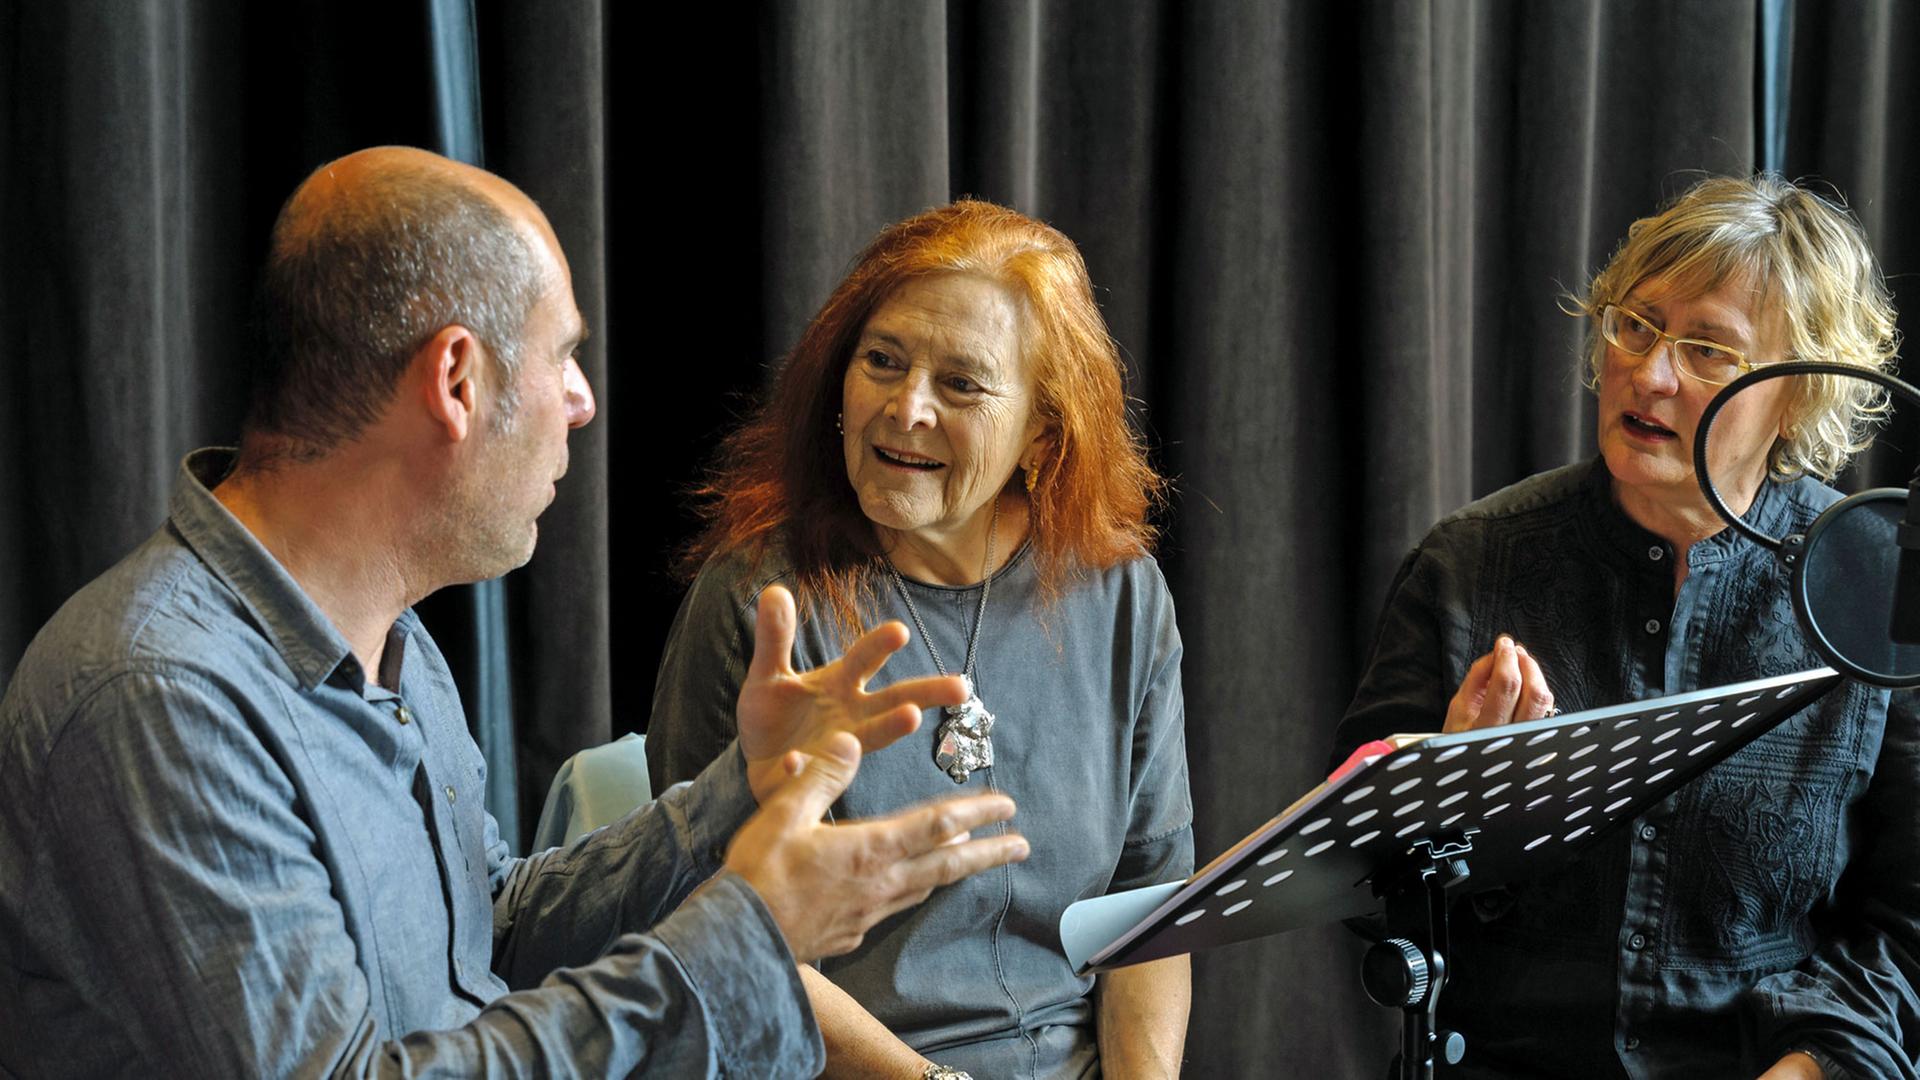 Giuseppe Maio, Liliane Lijn und Gaby Hartel (v.l.n.r.) bei der Produktion im Studio.